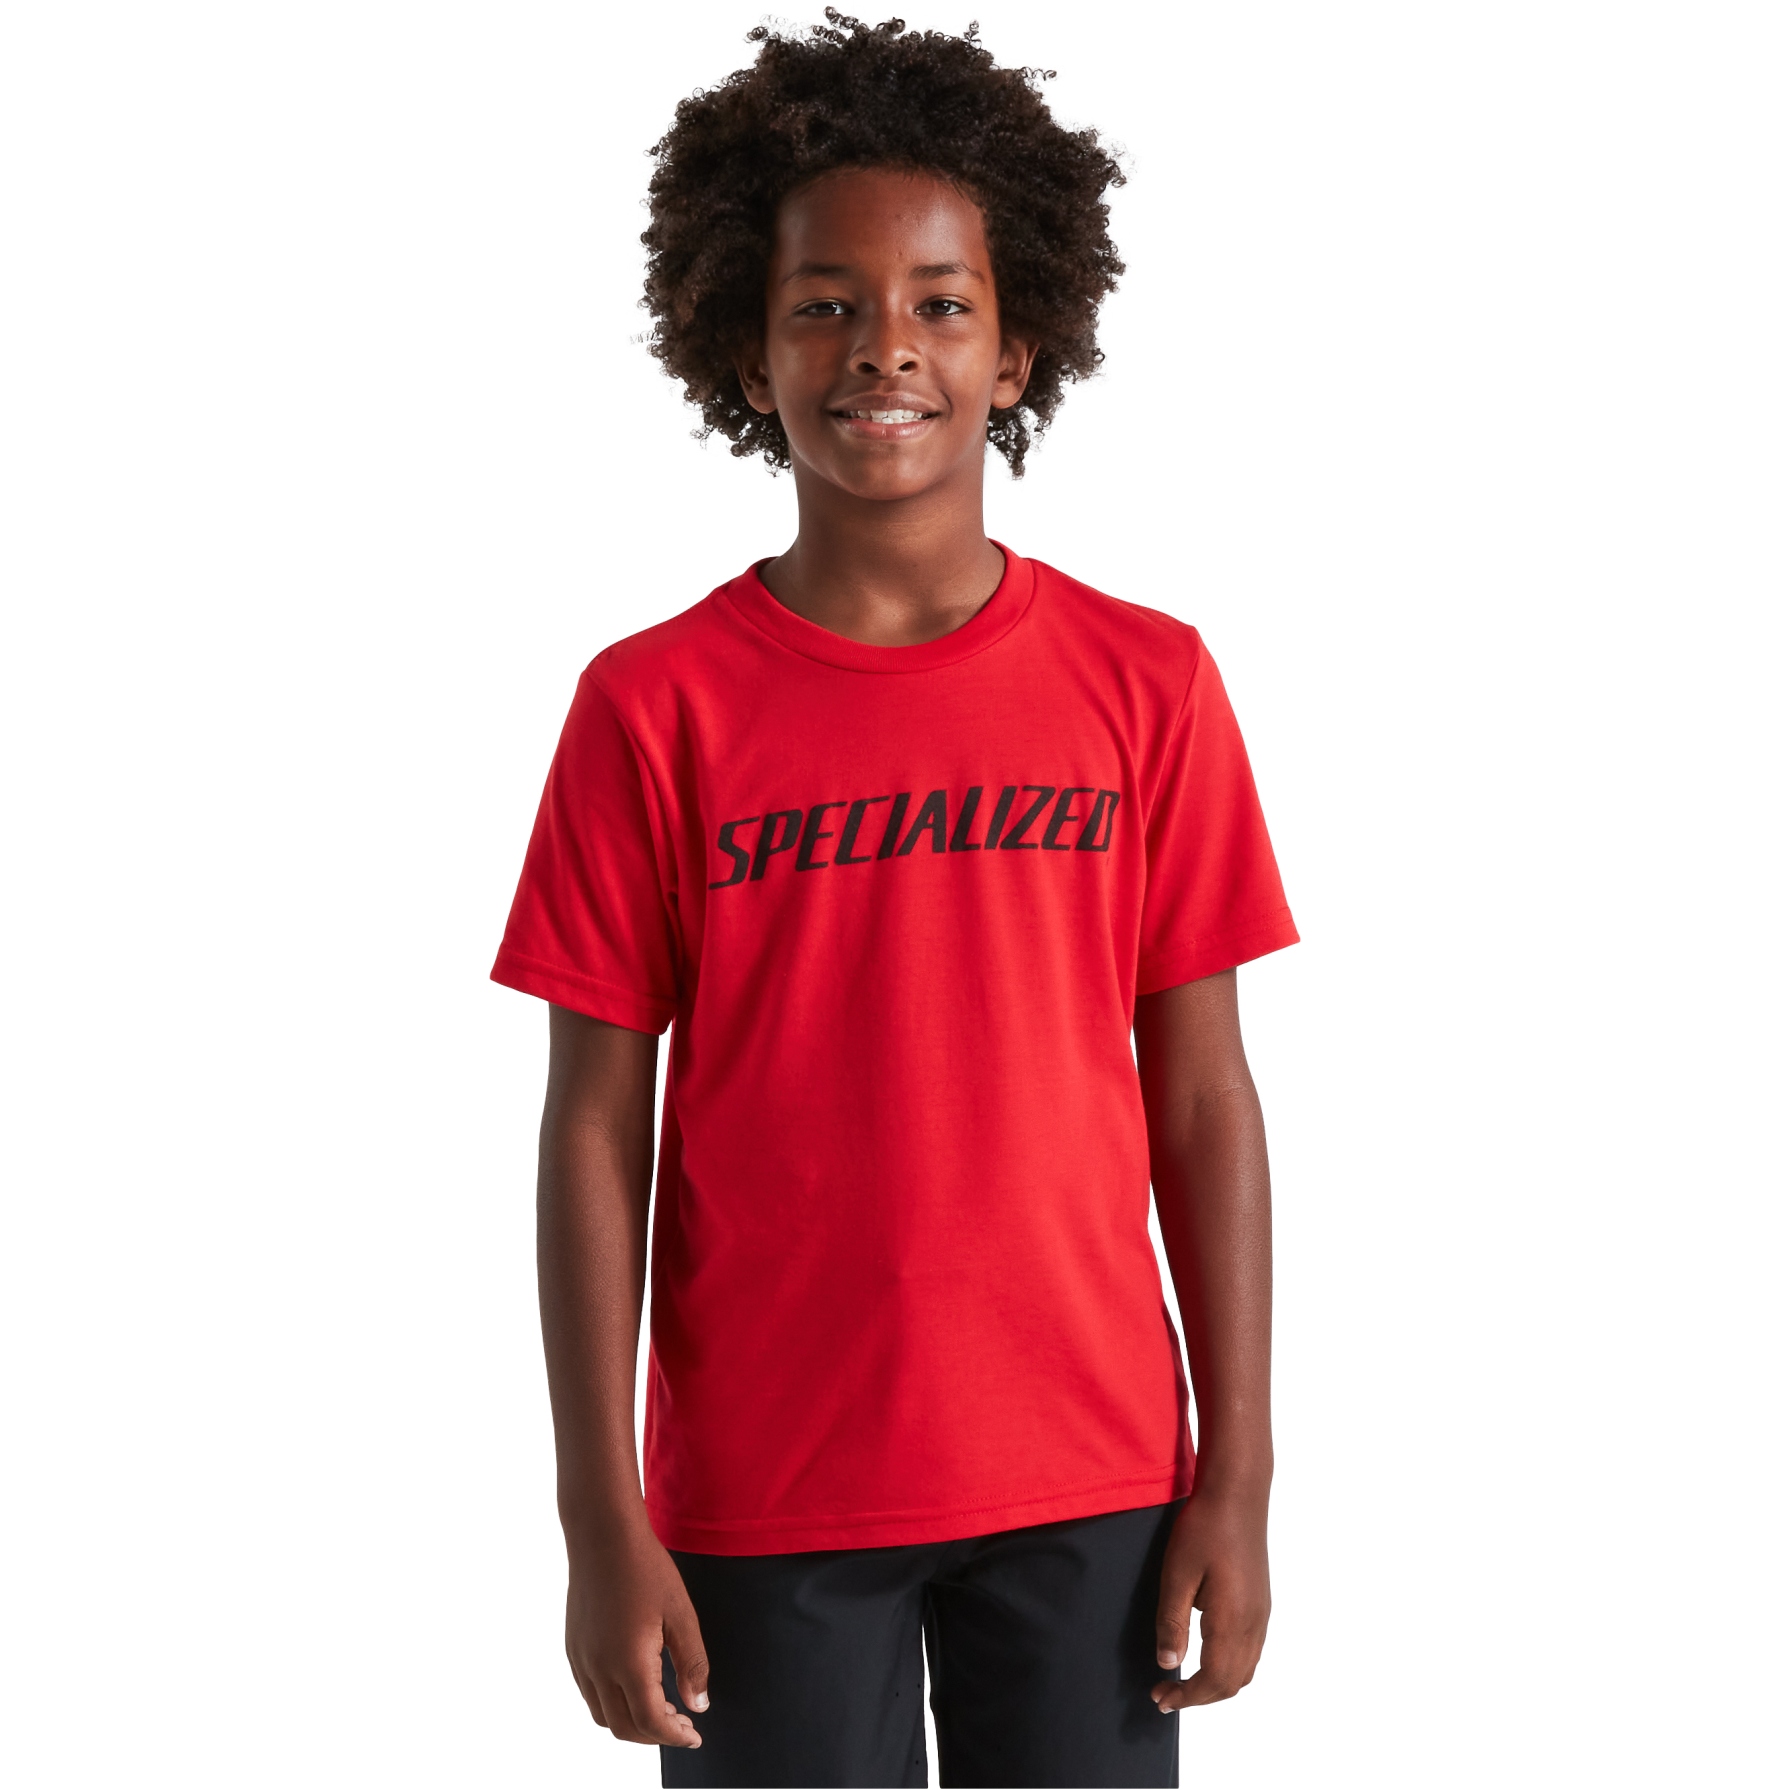 Produktbild von Specialized Wordmark T-Shirt Kinder - flo red